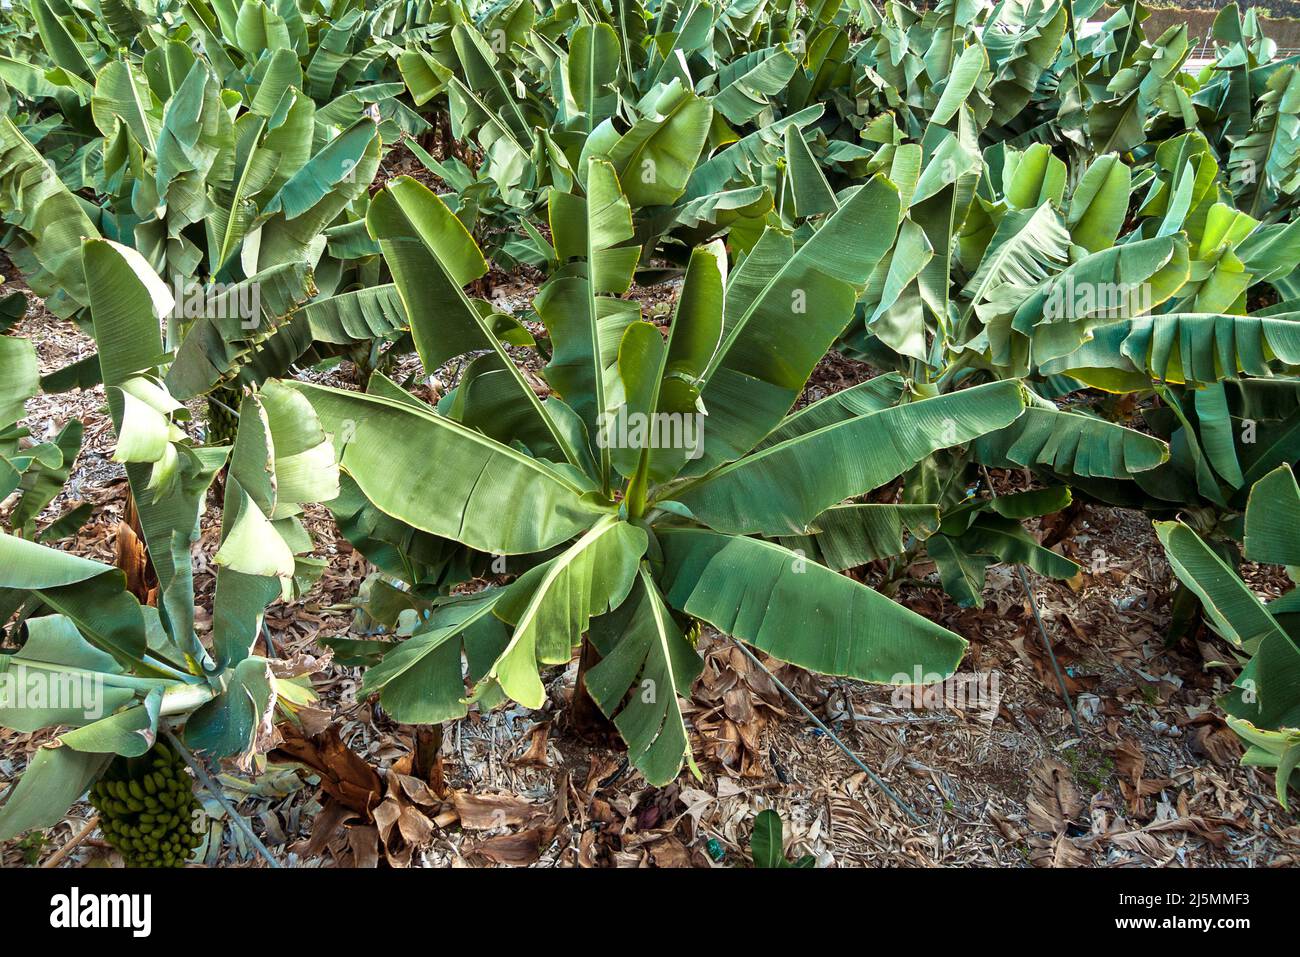 La Gomera, Hermigua, Canary Islands, Spain: banana plantation Stock Photo